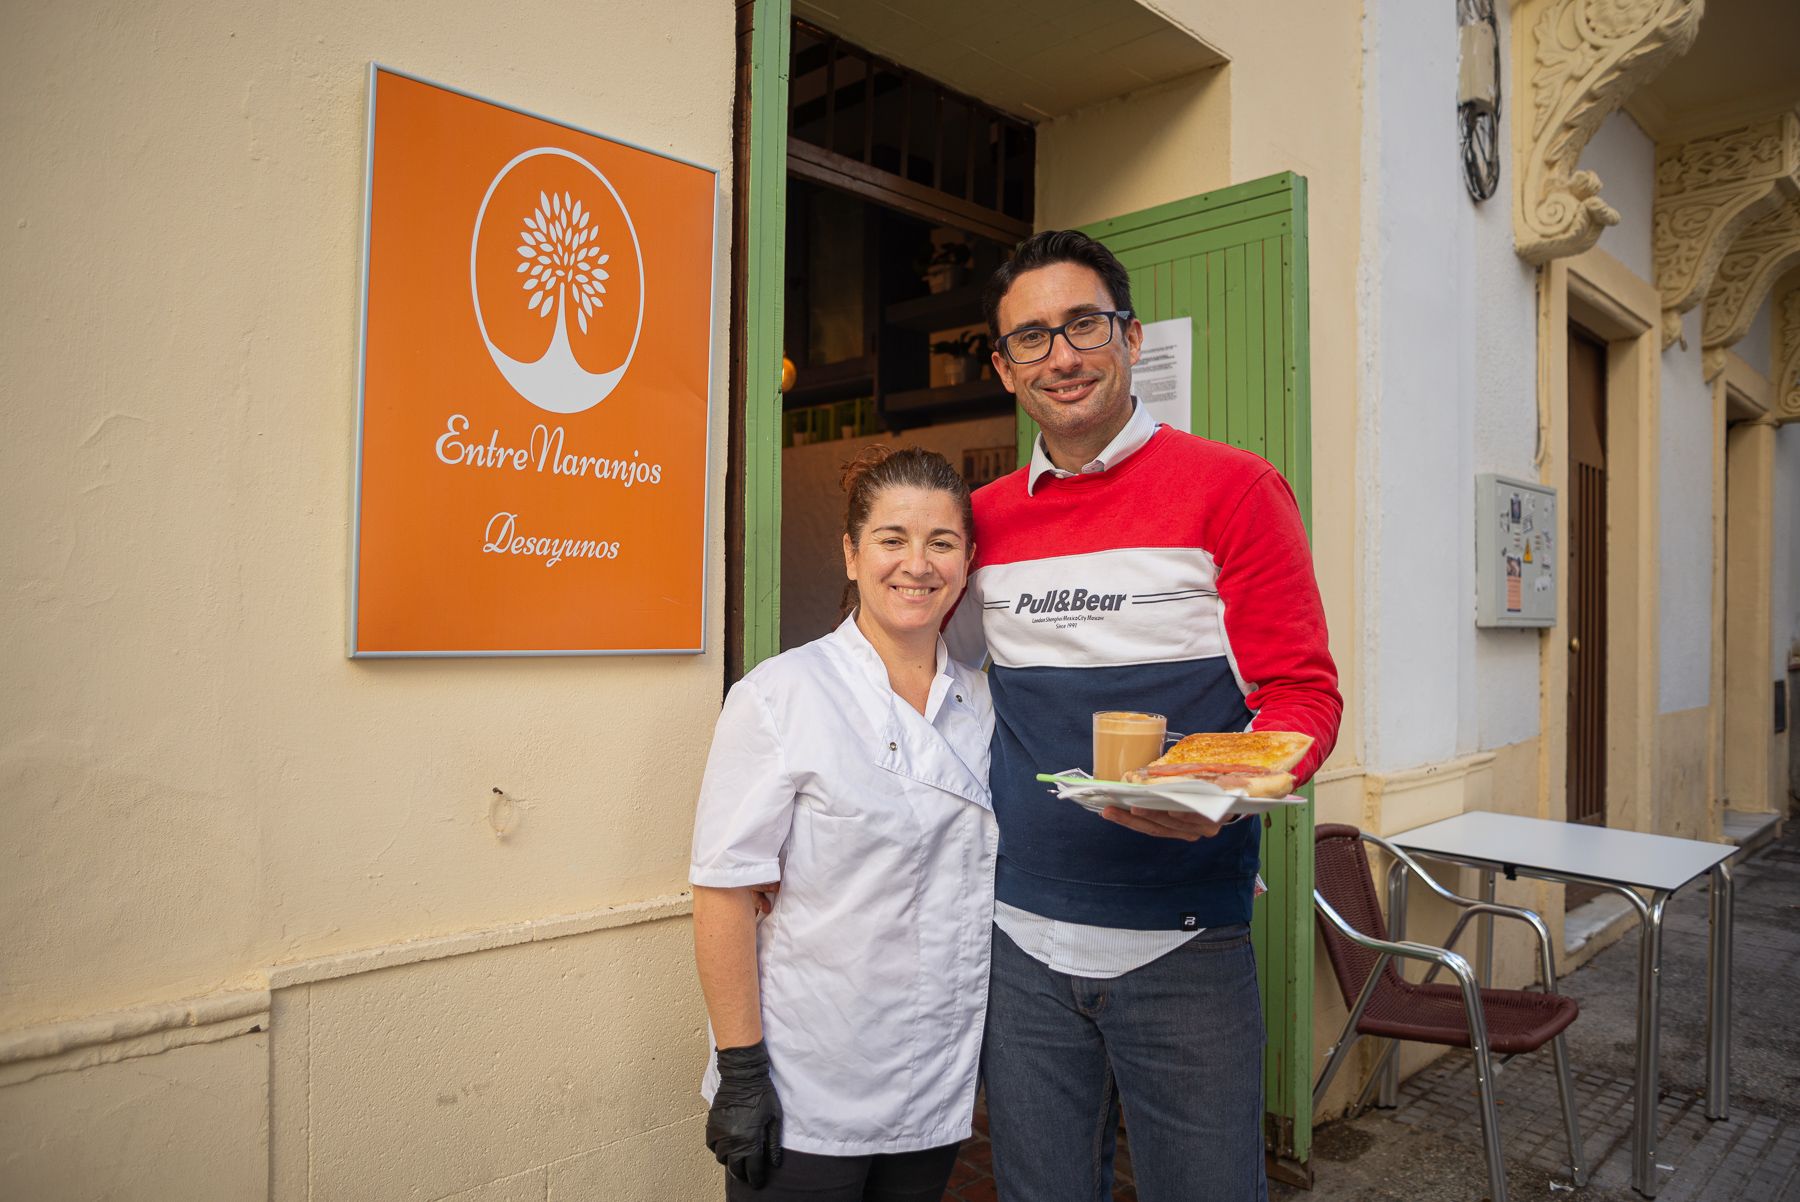 Los jerezanos Alberto y Eva María en la entrada del establecimiento EntreNaranjos especializado en desayunos.